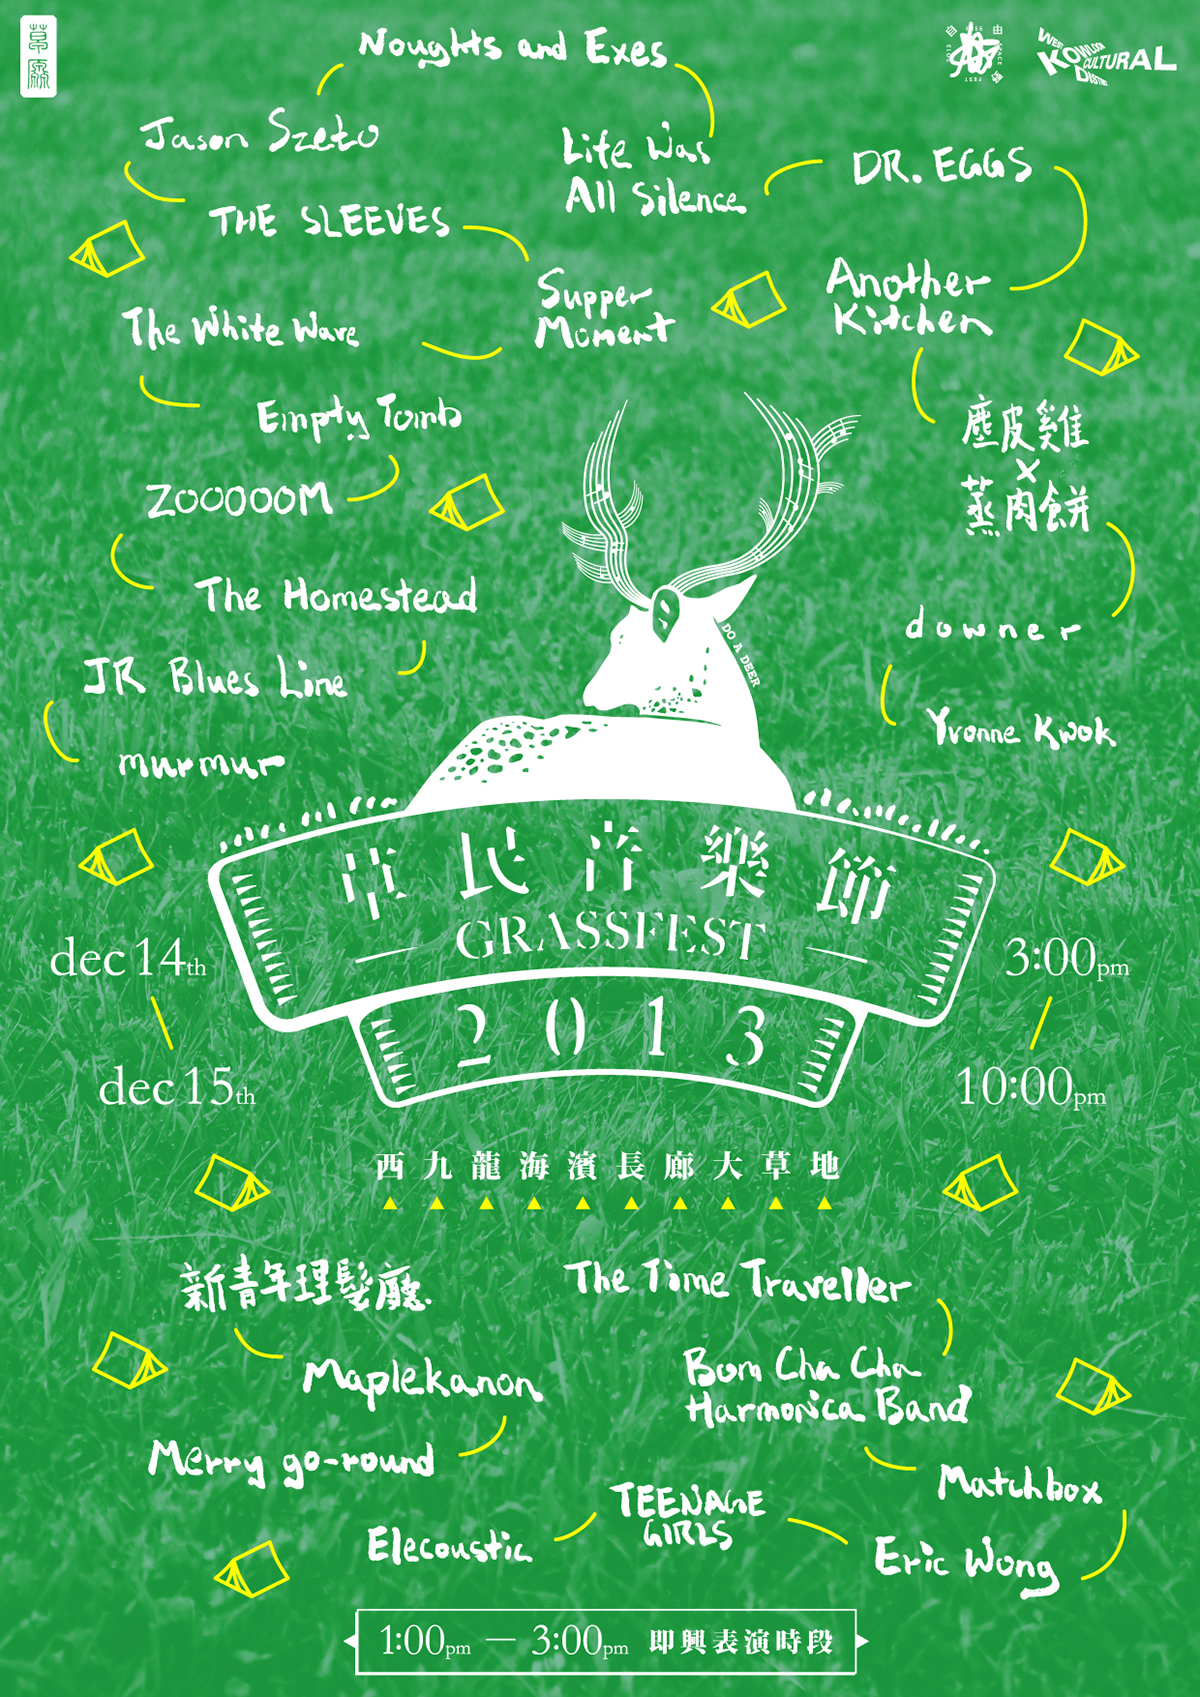 lawnmap camping grass green Hong Kong festival deer music notes Horn